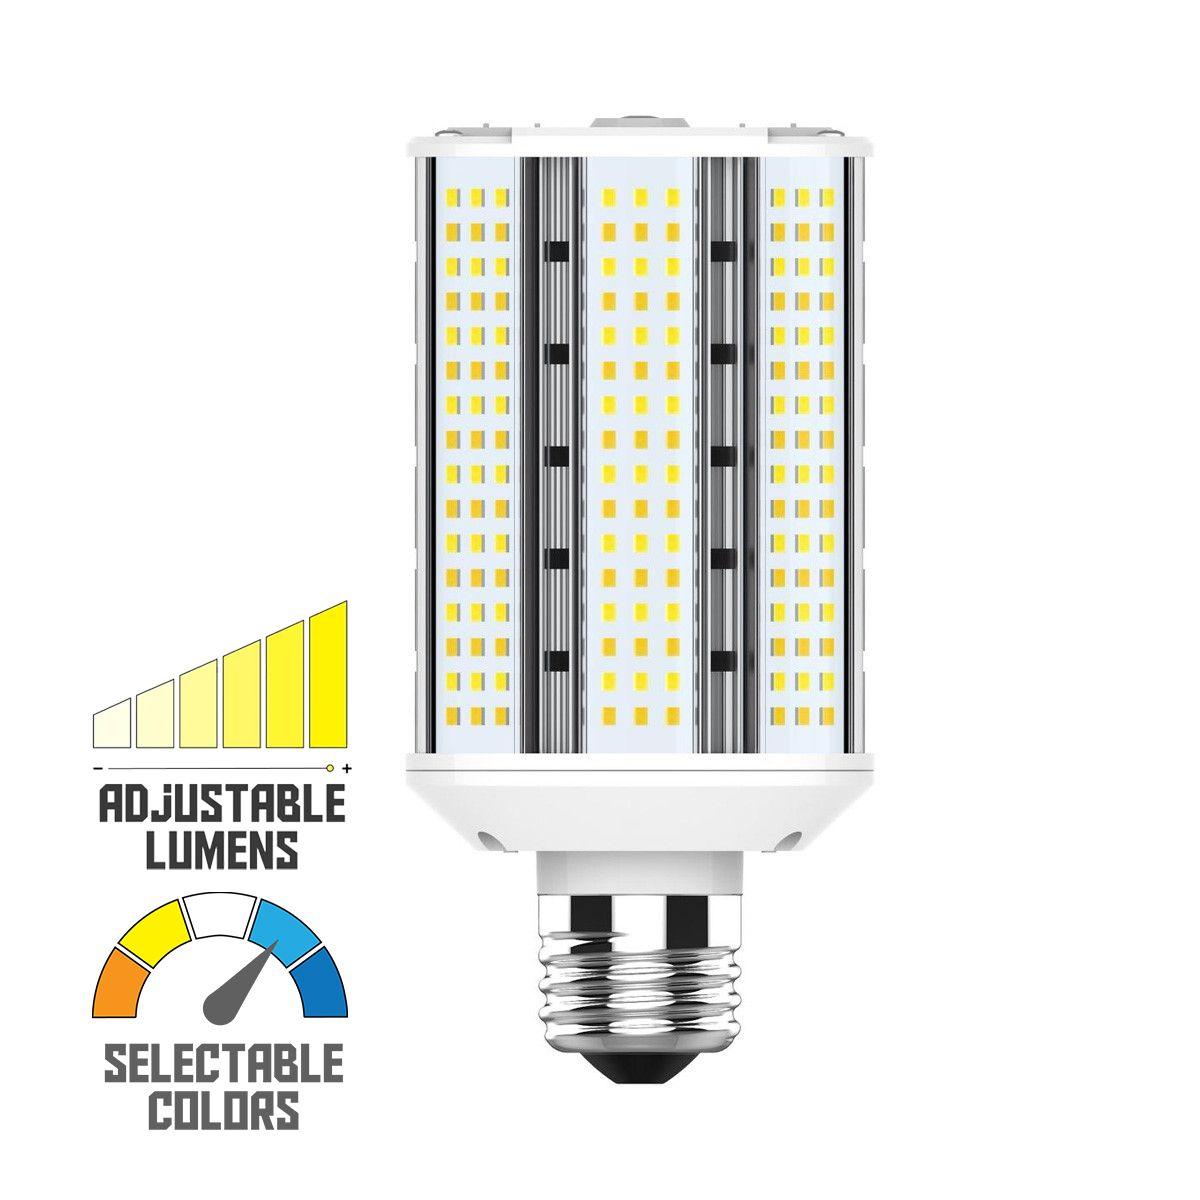 Hi-Pro Wall Pack/Shoebox LED Retrofit Lamp, 30W, 4500 Lumens, Selectable CCT, 30K/40K/50K, E26 Base, 120-277V - Bees Lighting